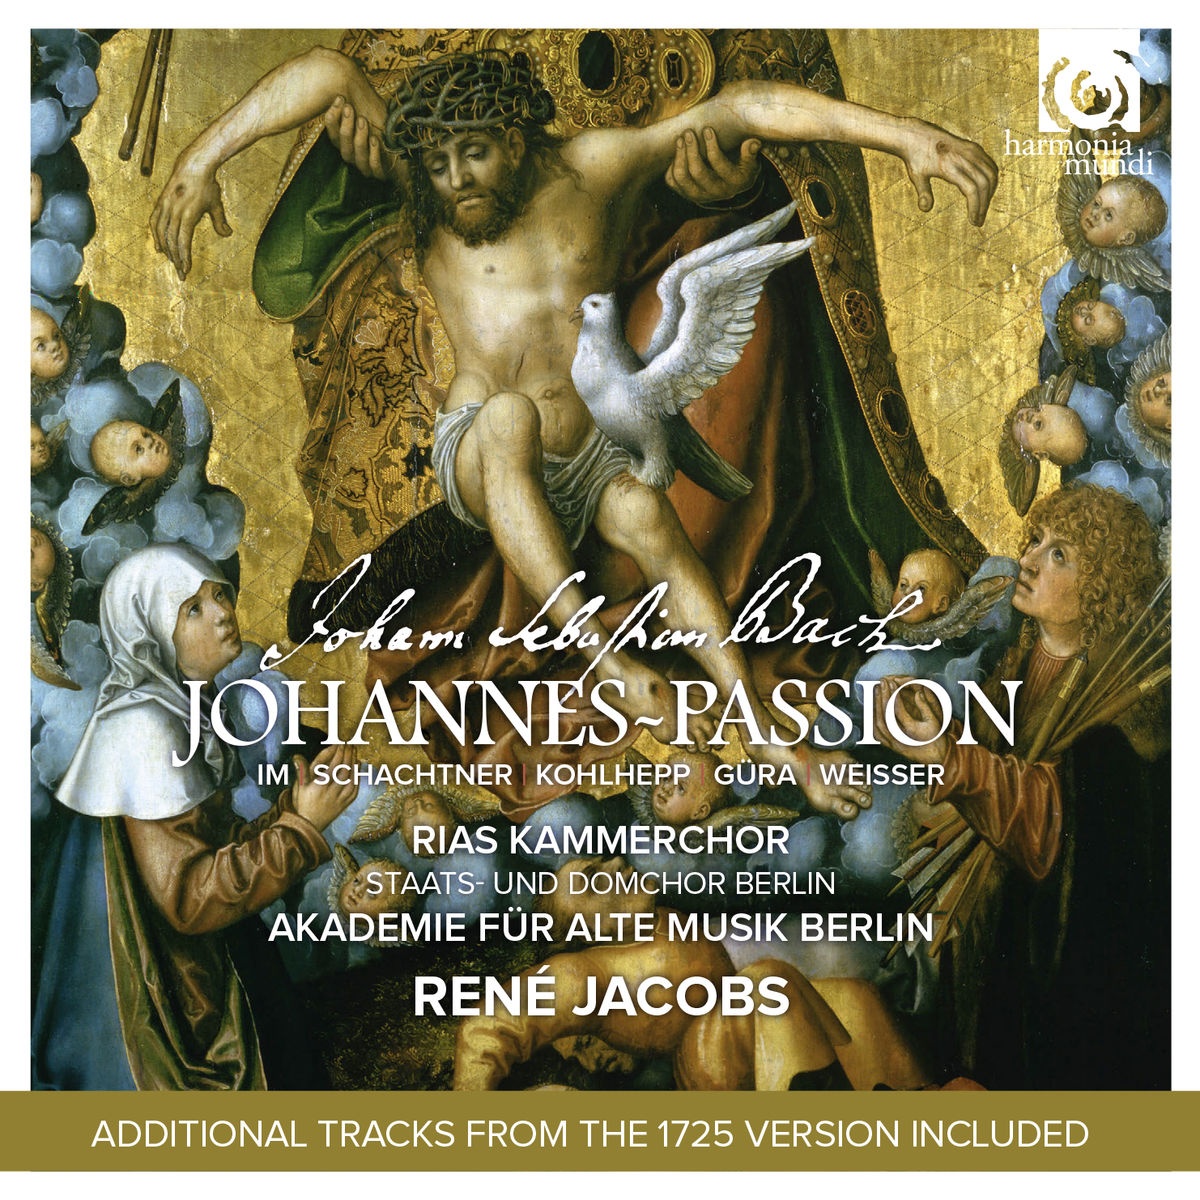 Johannes Passion, BWV 245, Pt. 1: 1. Chorus "Herr, unser Herrscher" (Exordium)